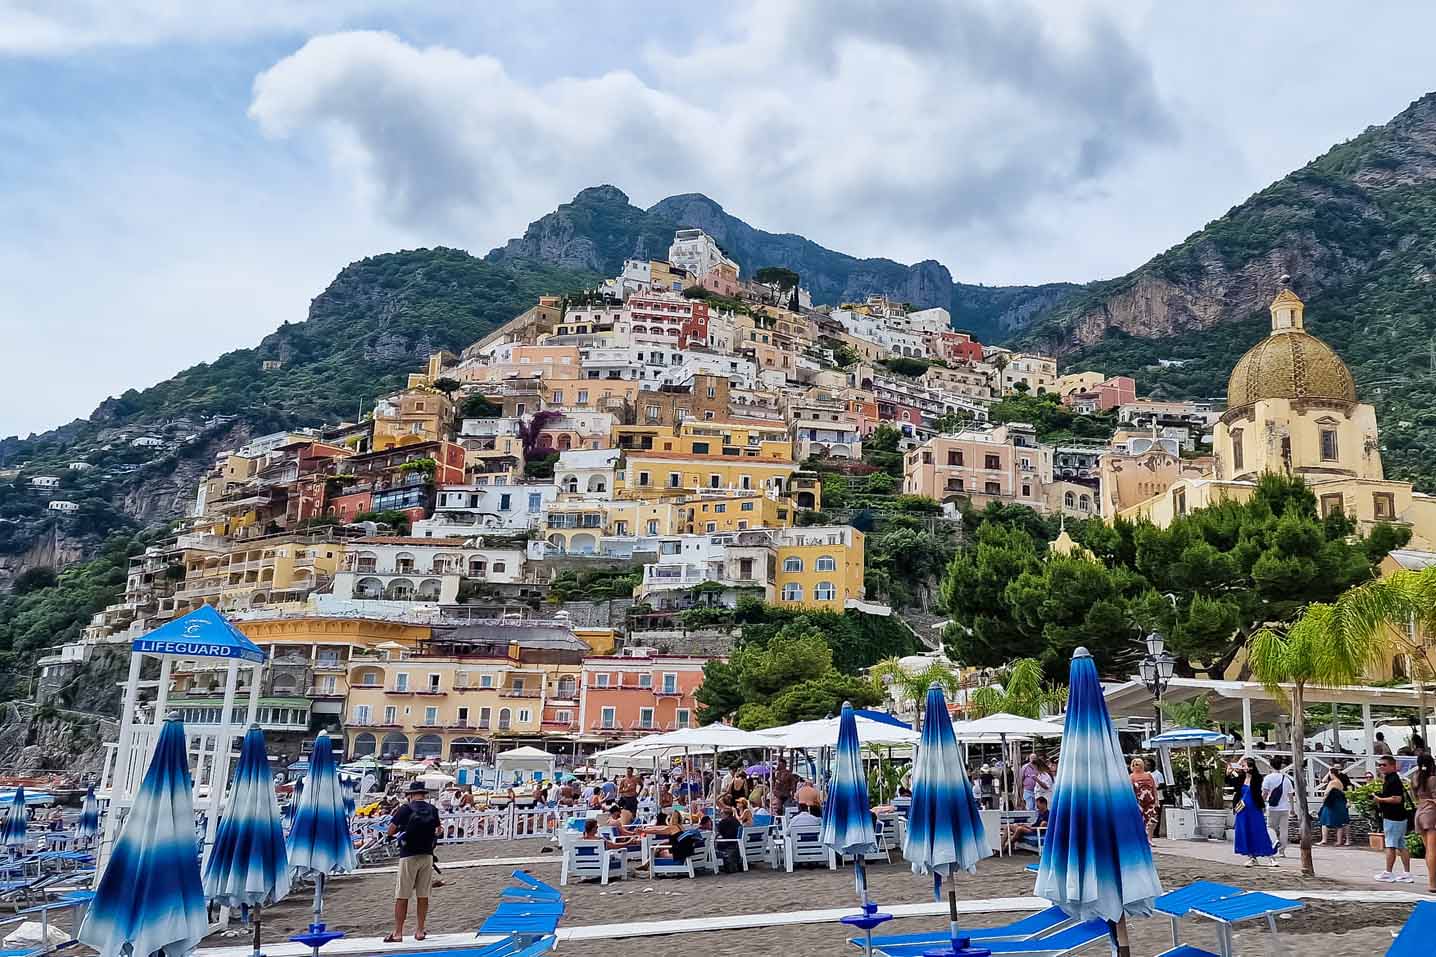 Ghé thăm phố biển Positano đẹp thơ mộng ở miền Nam nước Ý